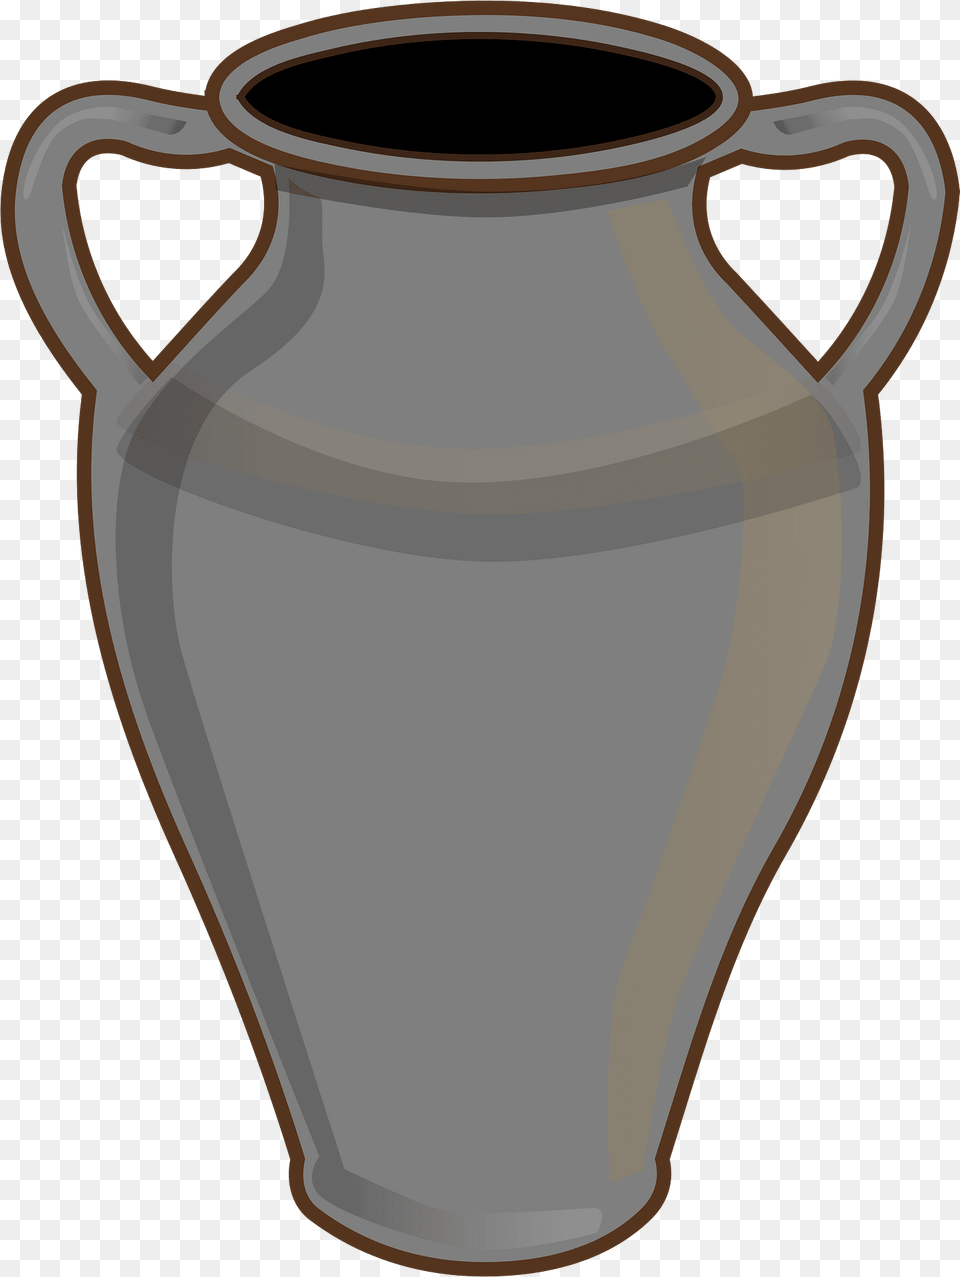 Vase Clipart, Jar, Pottery, Jug, Urn Png Image